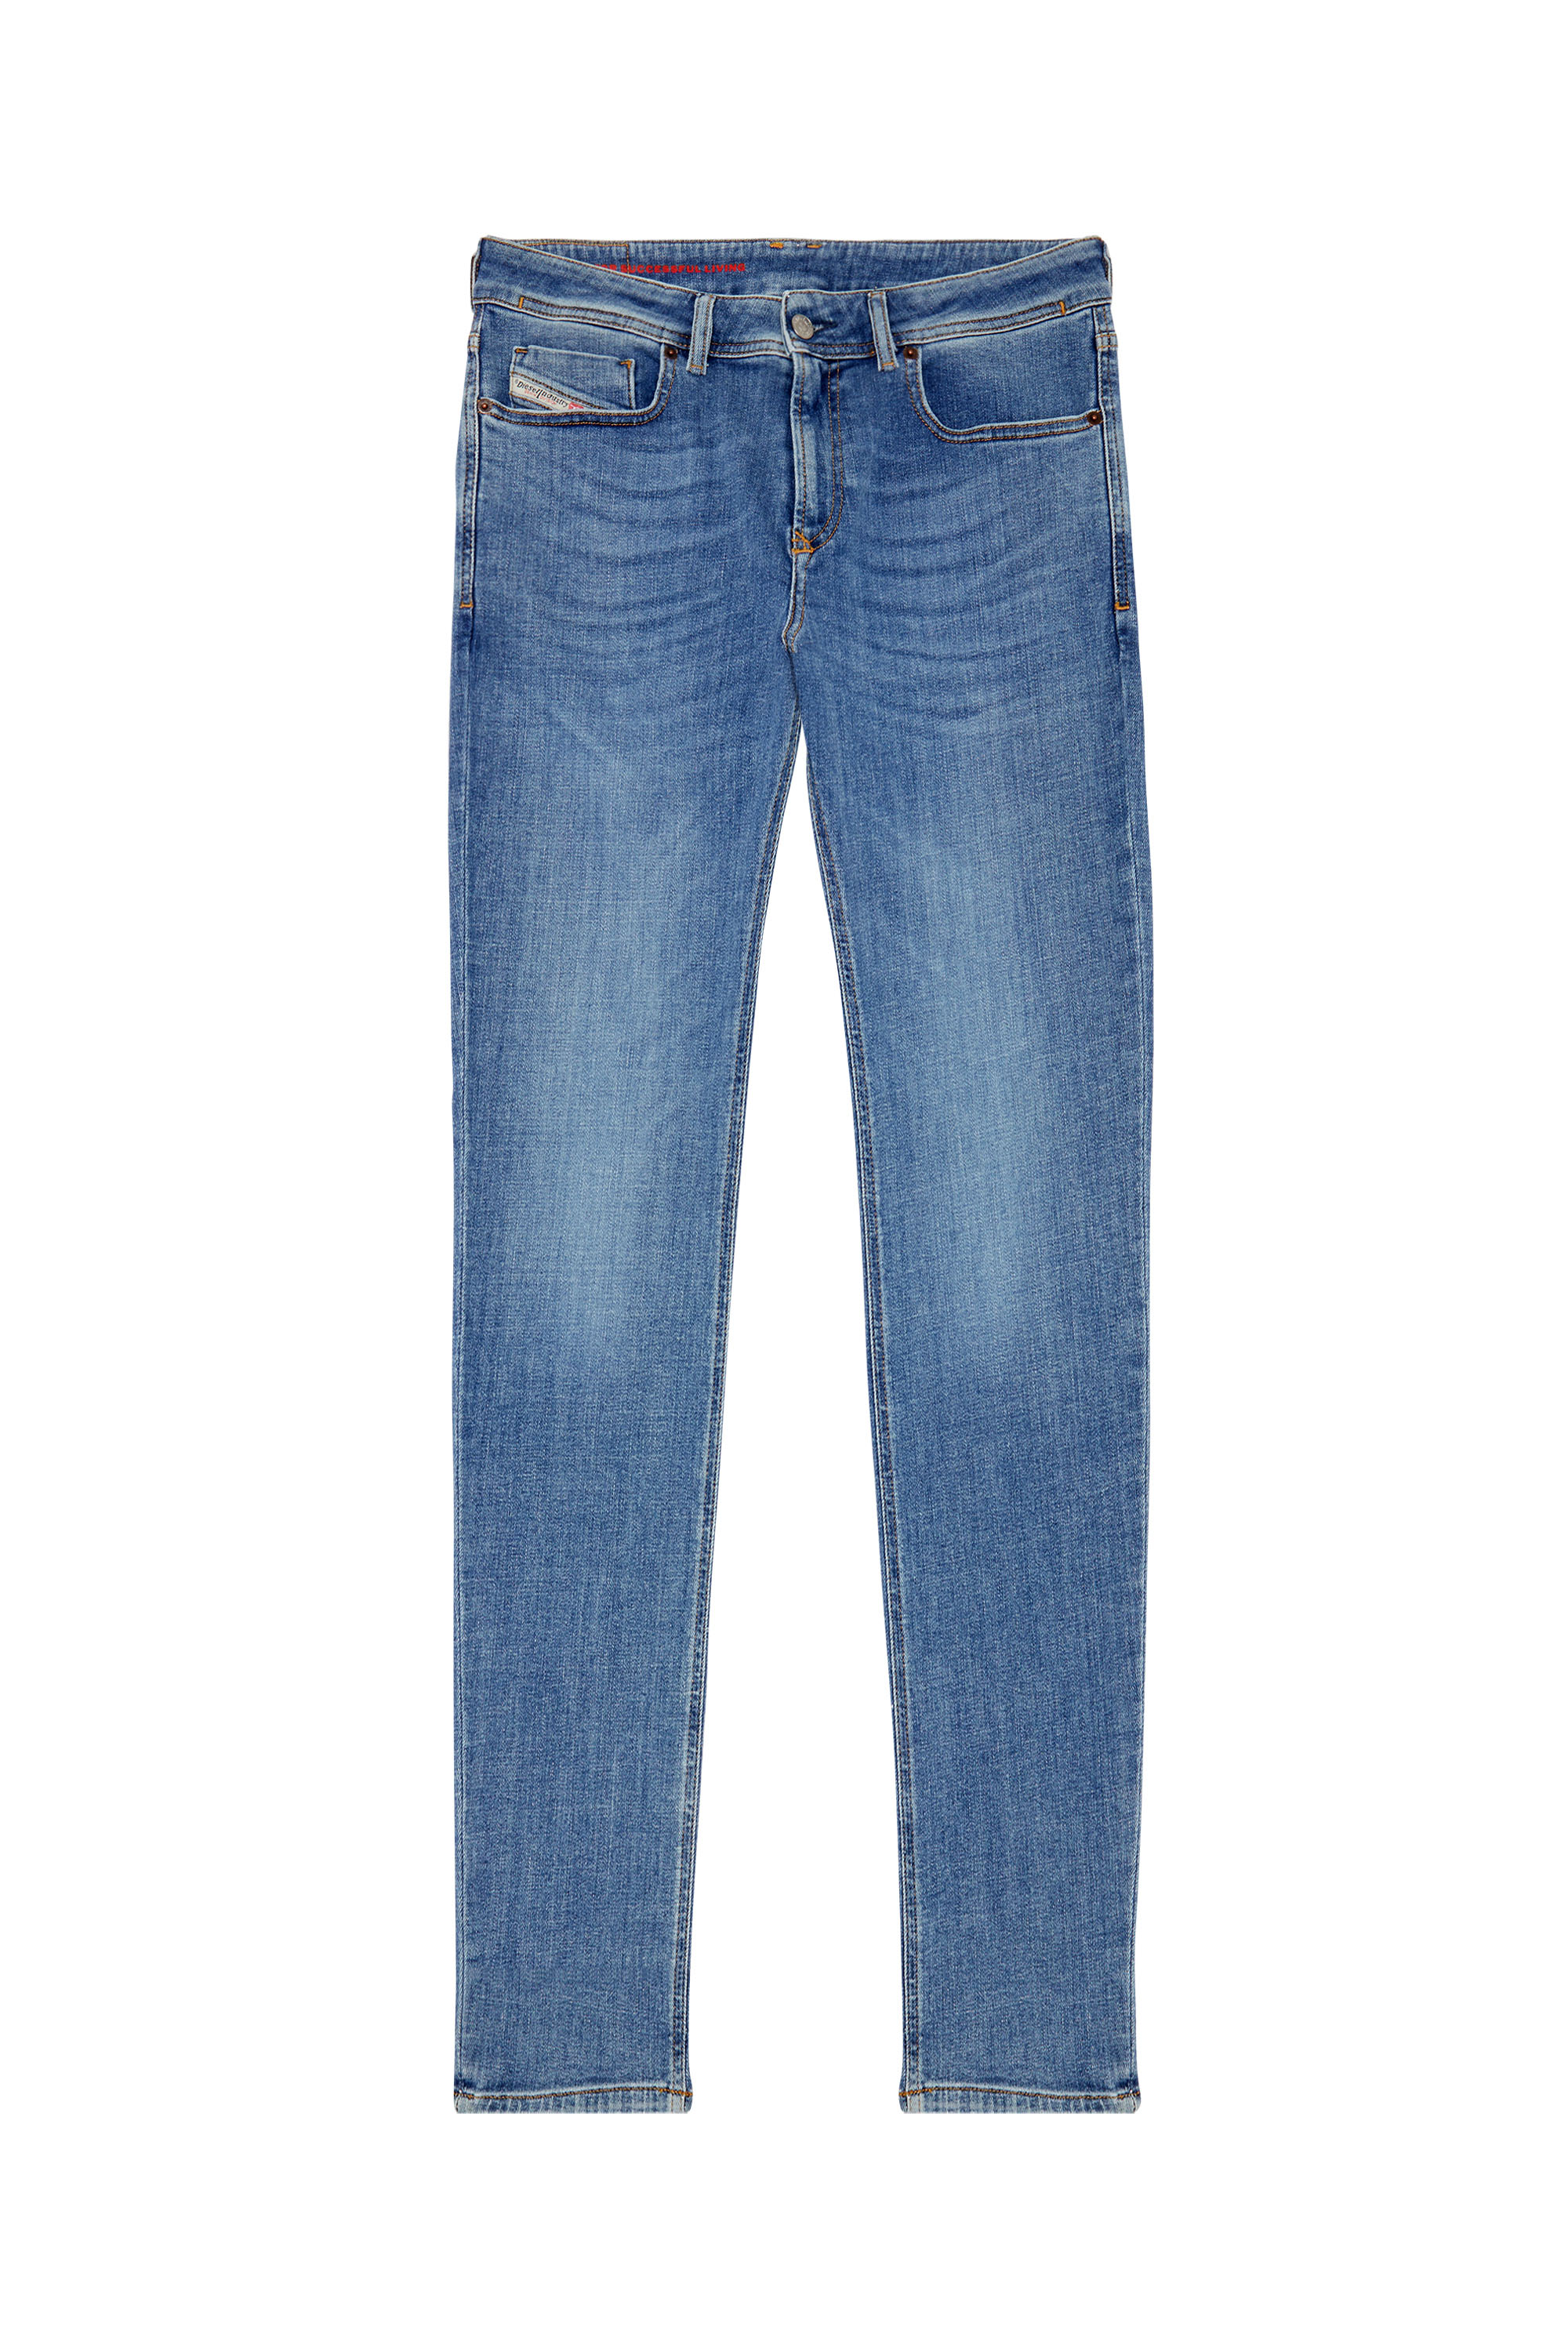 Diesel - Skinny Jeans 1979 Sleenker 09C01, Medium blue - Image 1